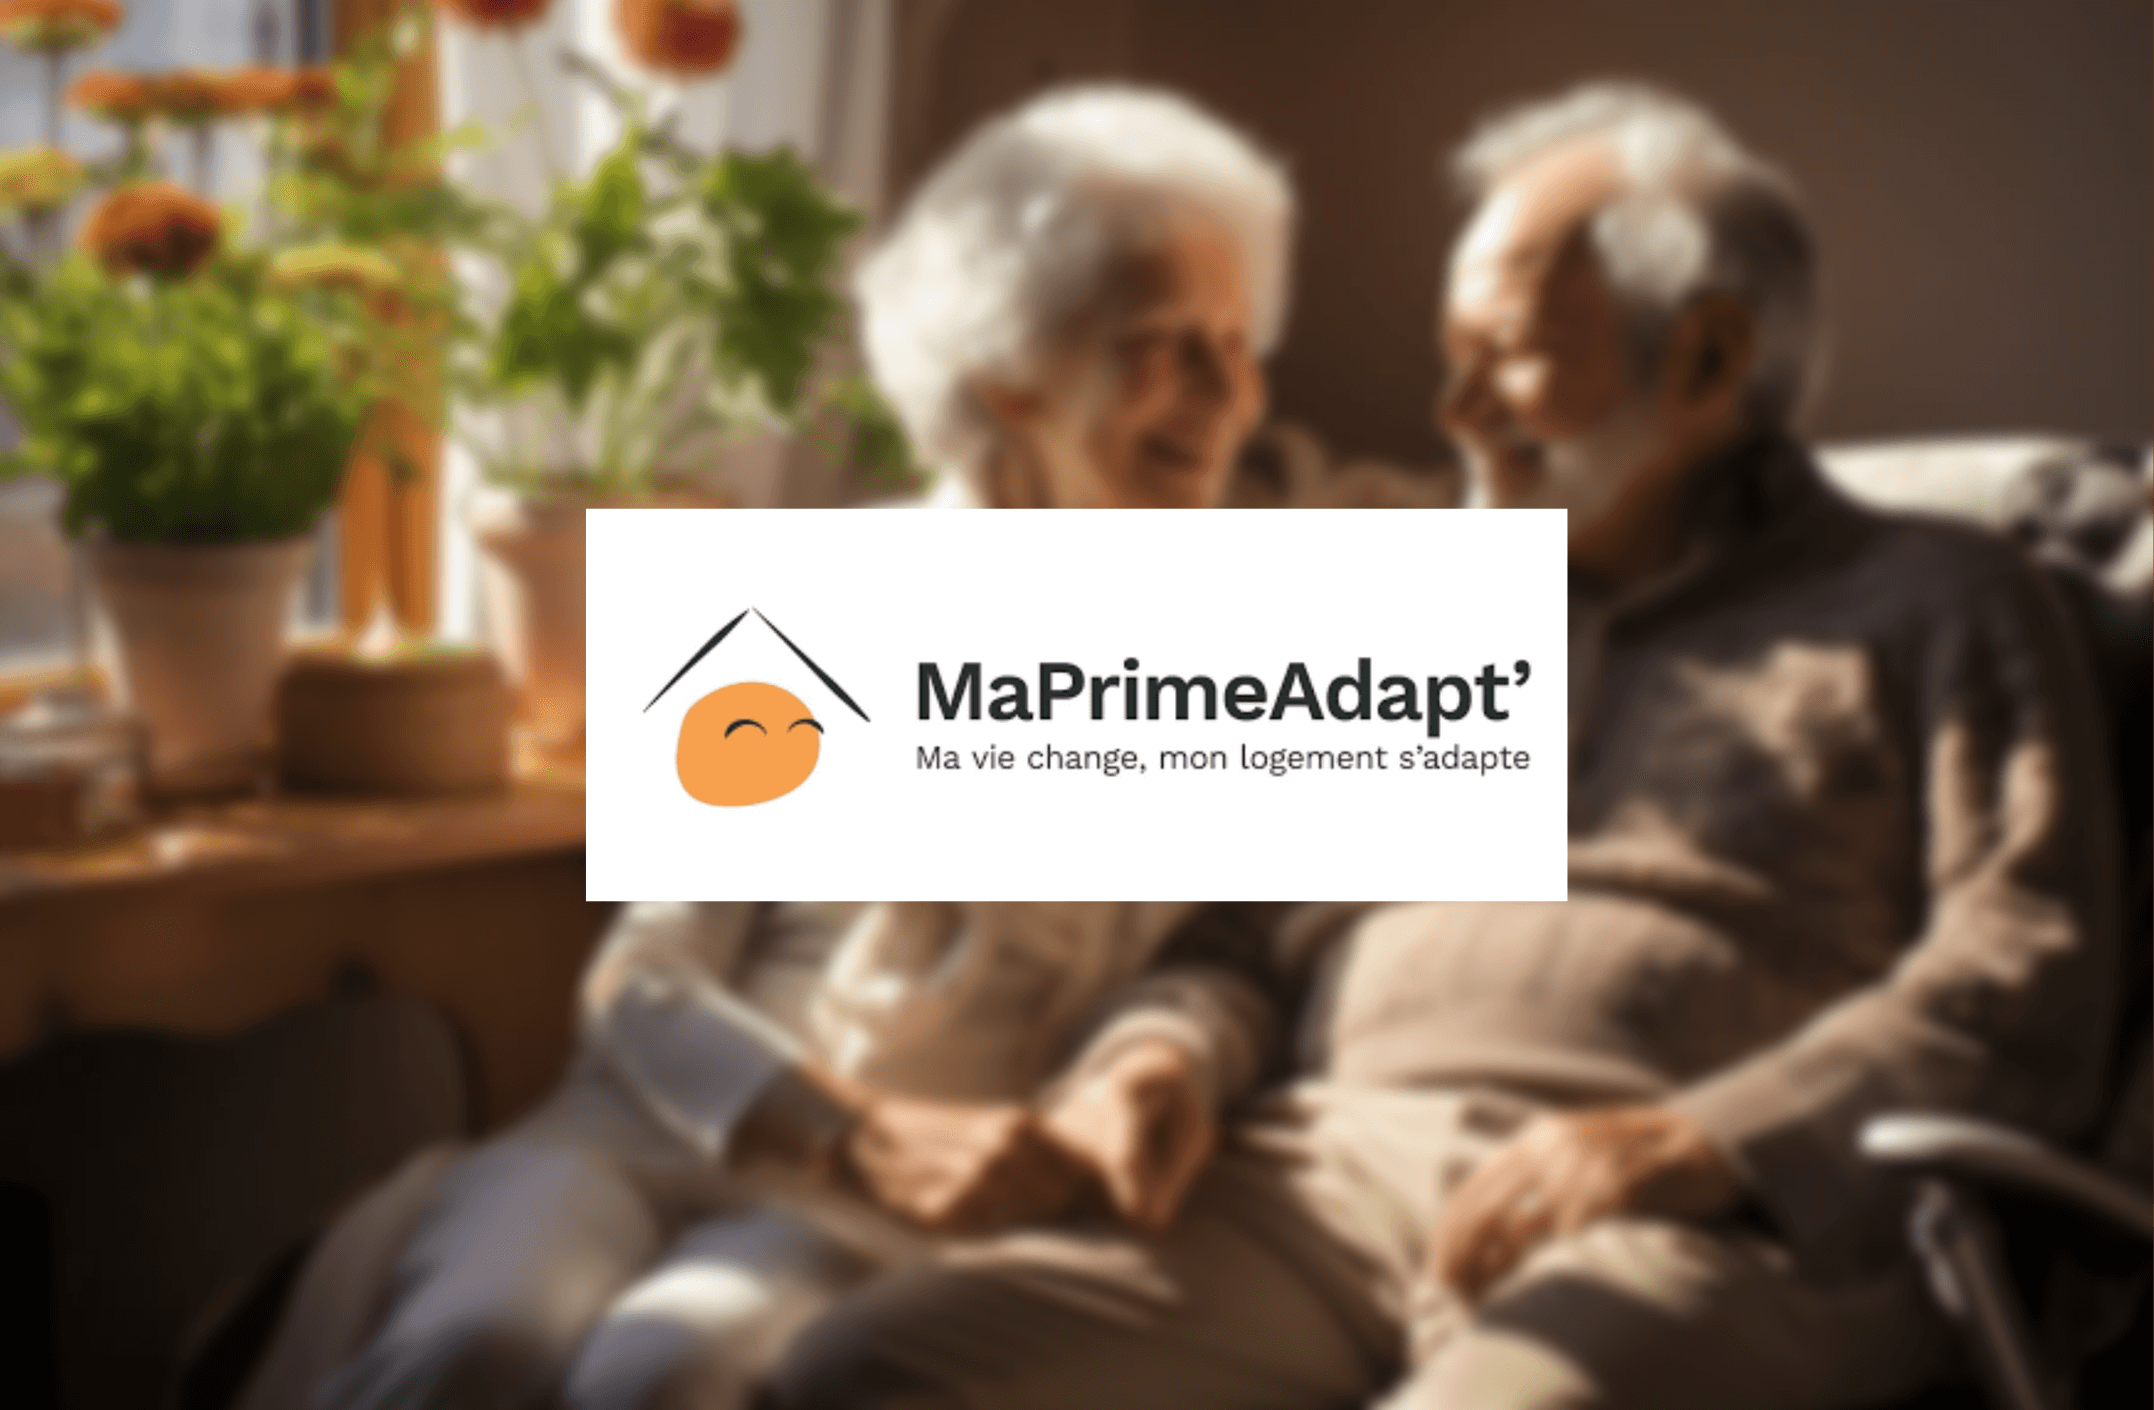 MaPrimeAdapt’: les chiffres recensés à 6 mois du lancement du dispositif